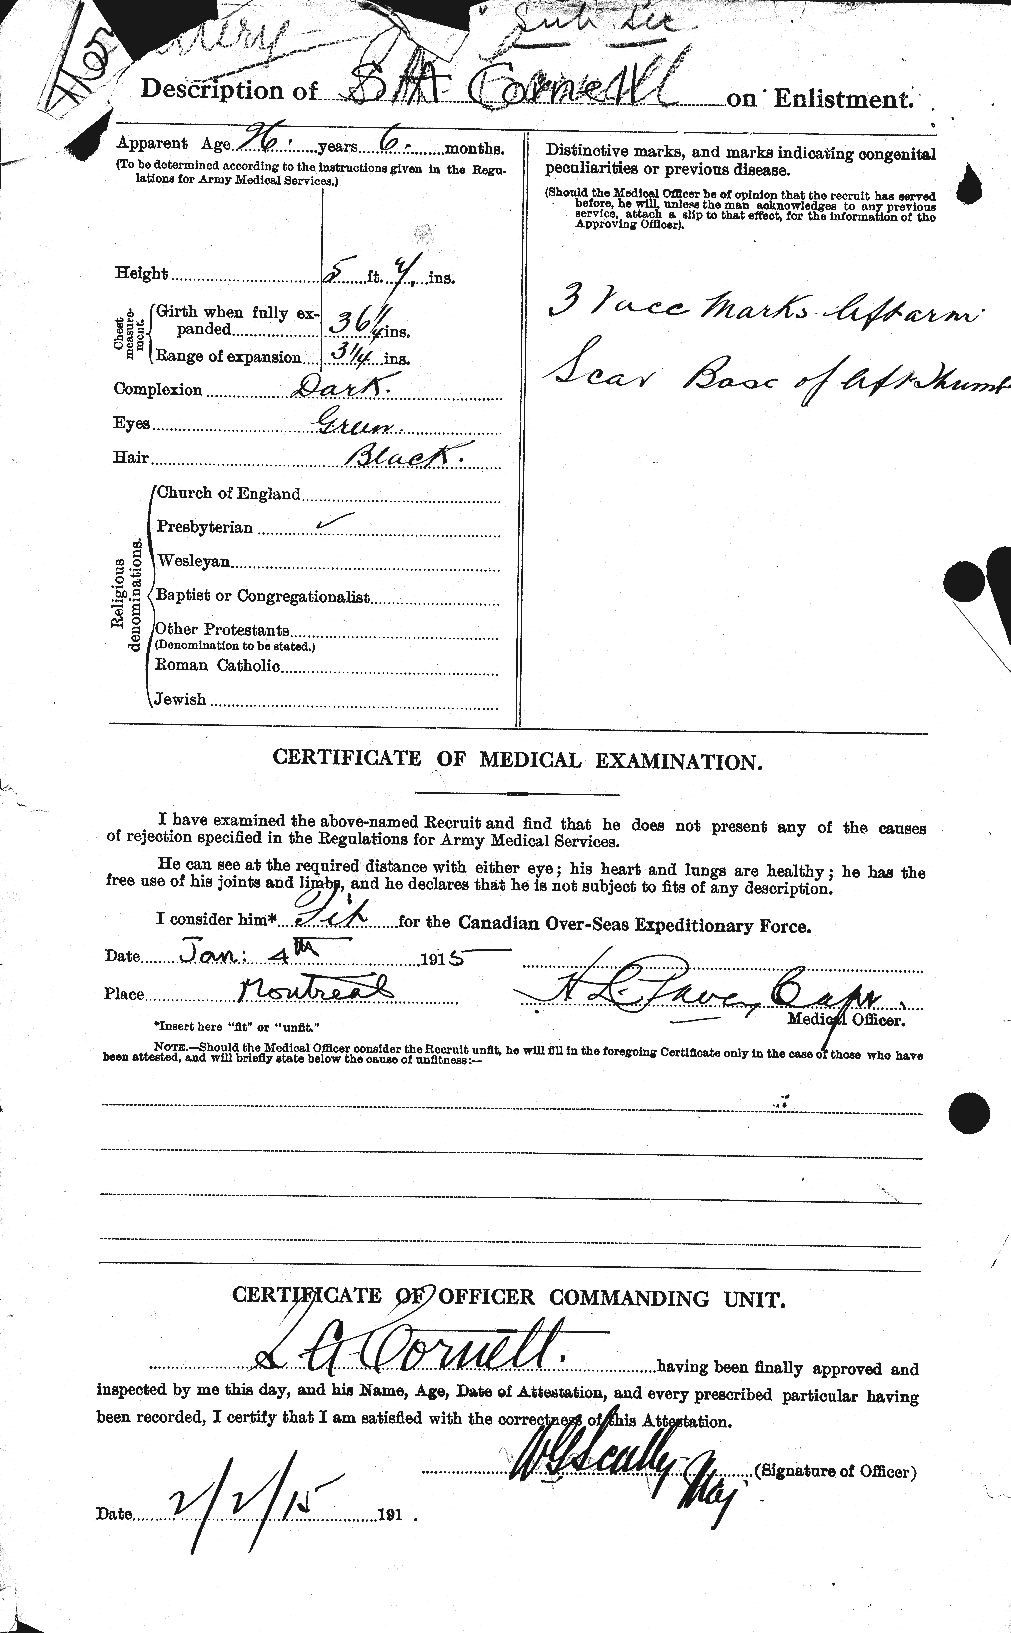 Dossiers du Personnel de la Première Guerre mondiale - CEC 056318b